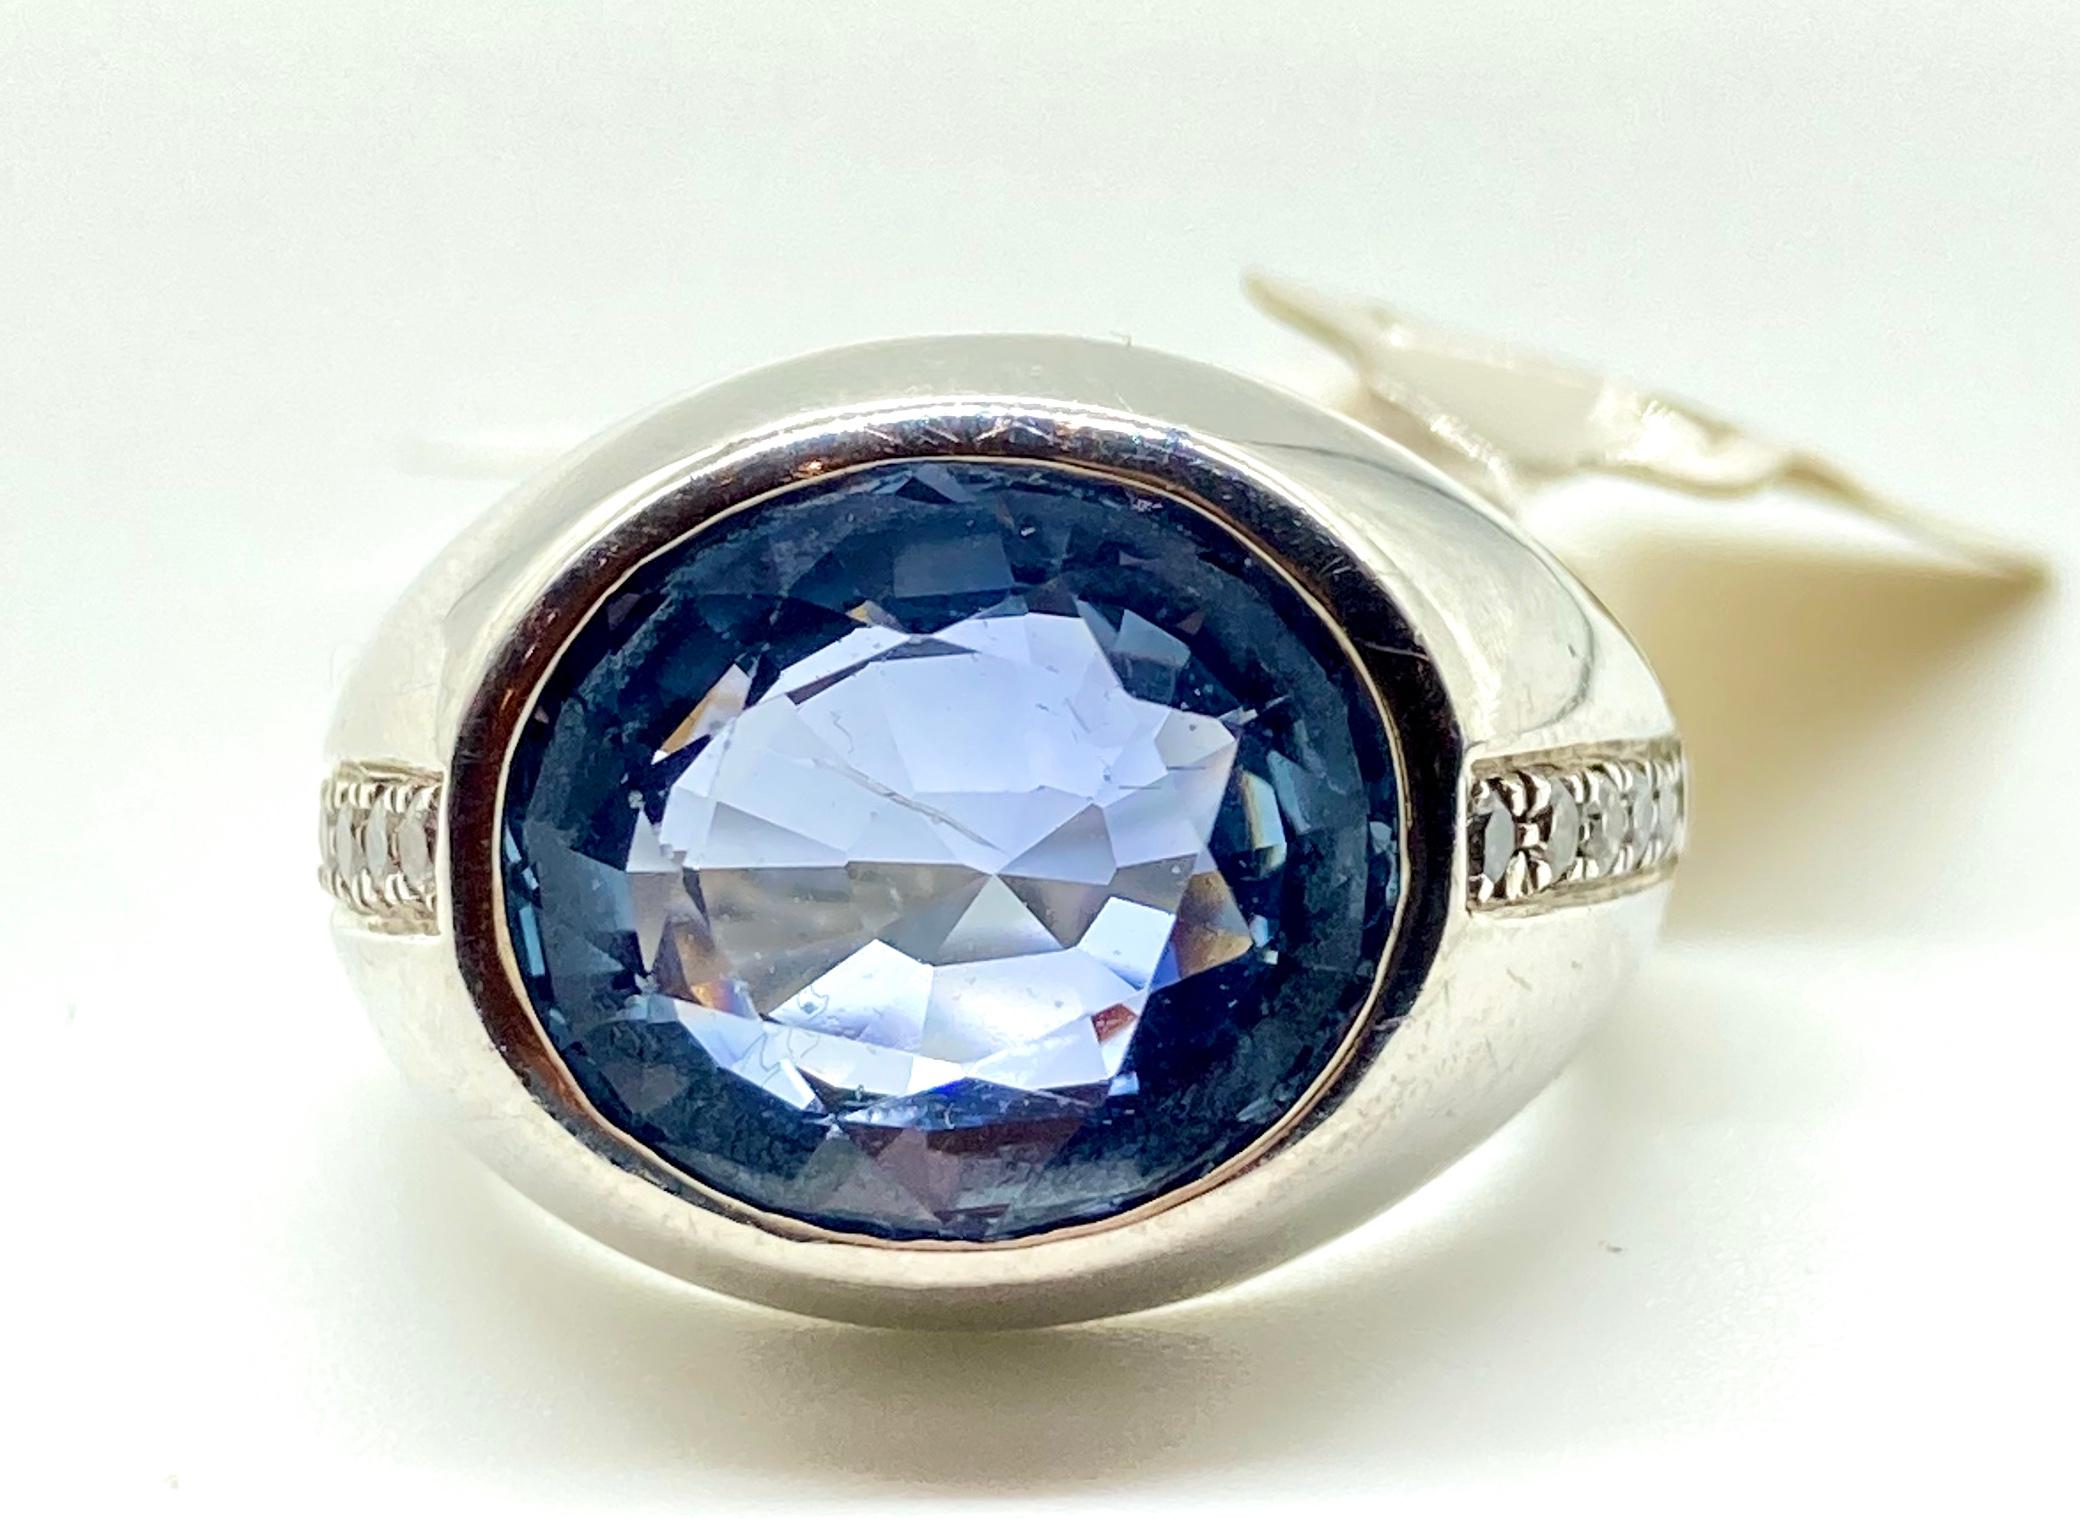 Ein wunderschöner Ring aus Weißgold mit einem oval geschliffenen hellblauen Ceylon-Saphir von 7,80 Karat, eingefasst von 0,15 Karat runden Diamanten im Brillantschliff. Ca. 1970. Zertifikat verfügbar.